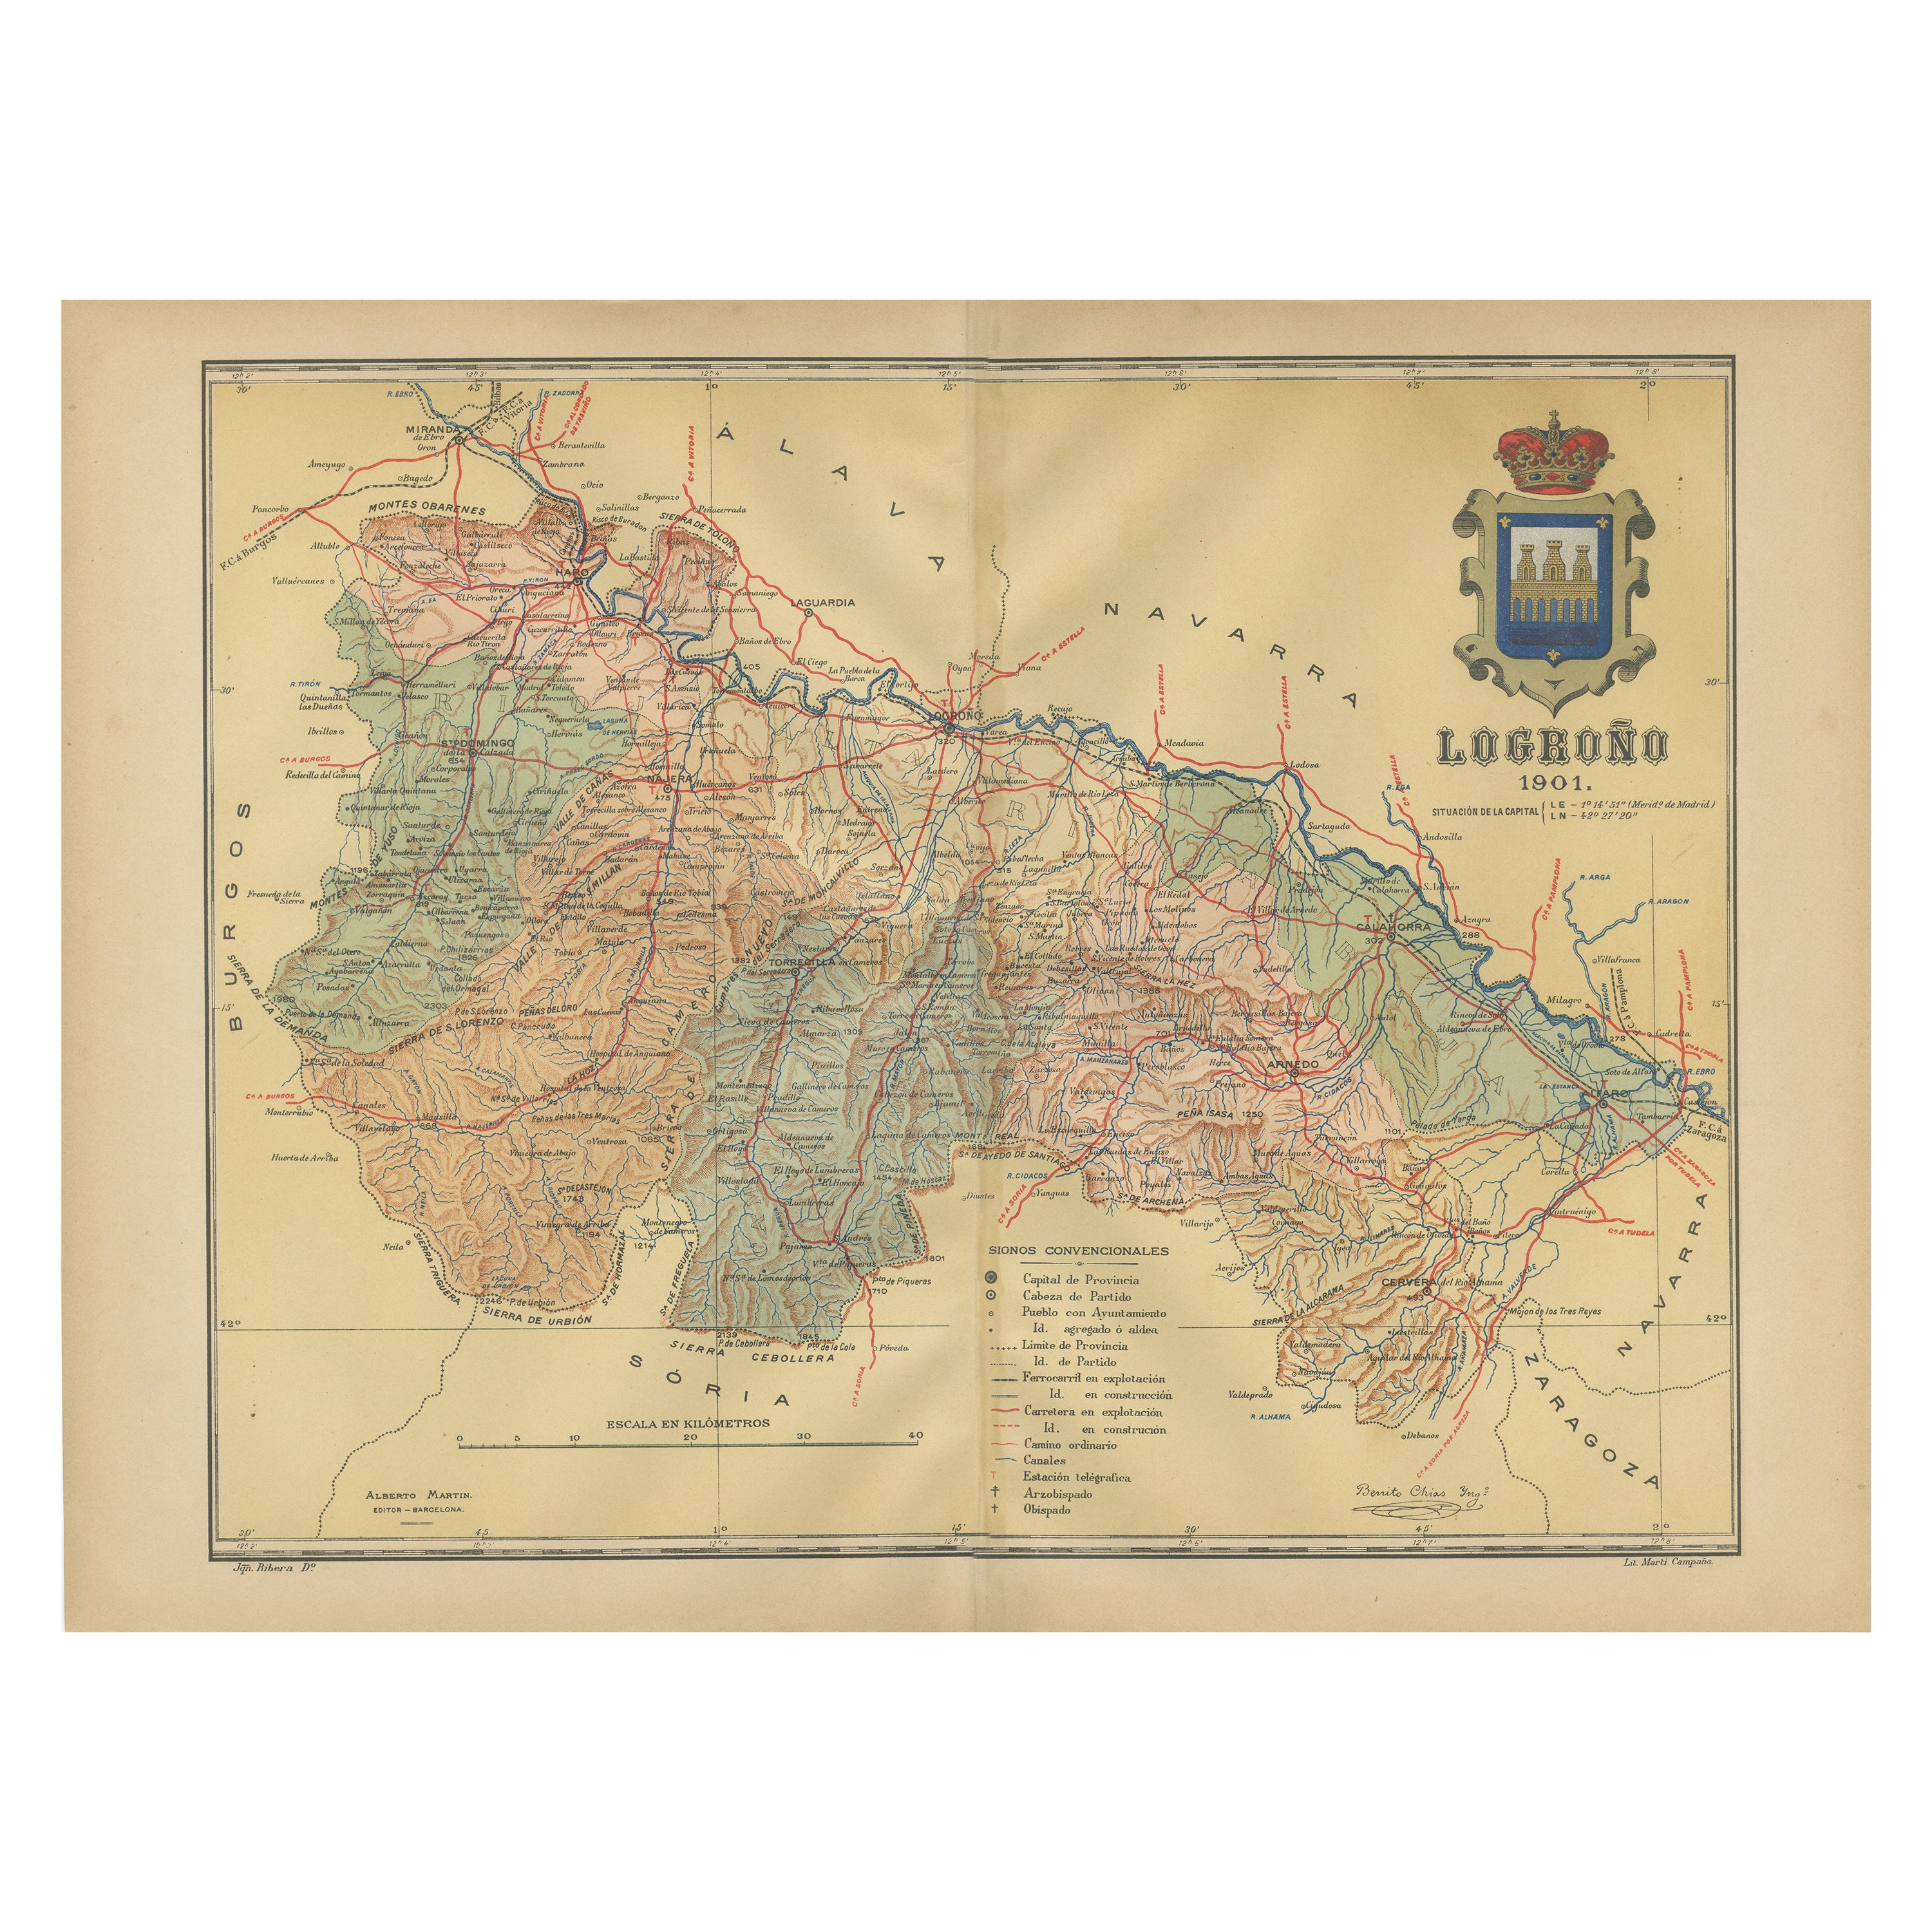 La Rioja 1901: Eine grafische Reise durch das berühmte spanische Weinland